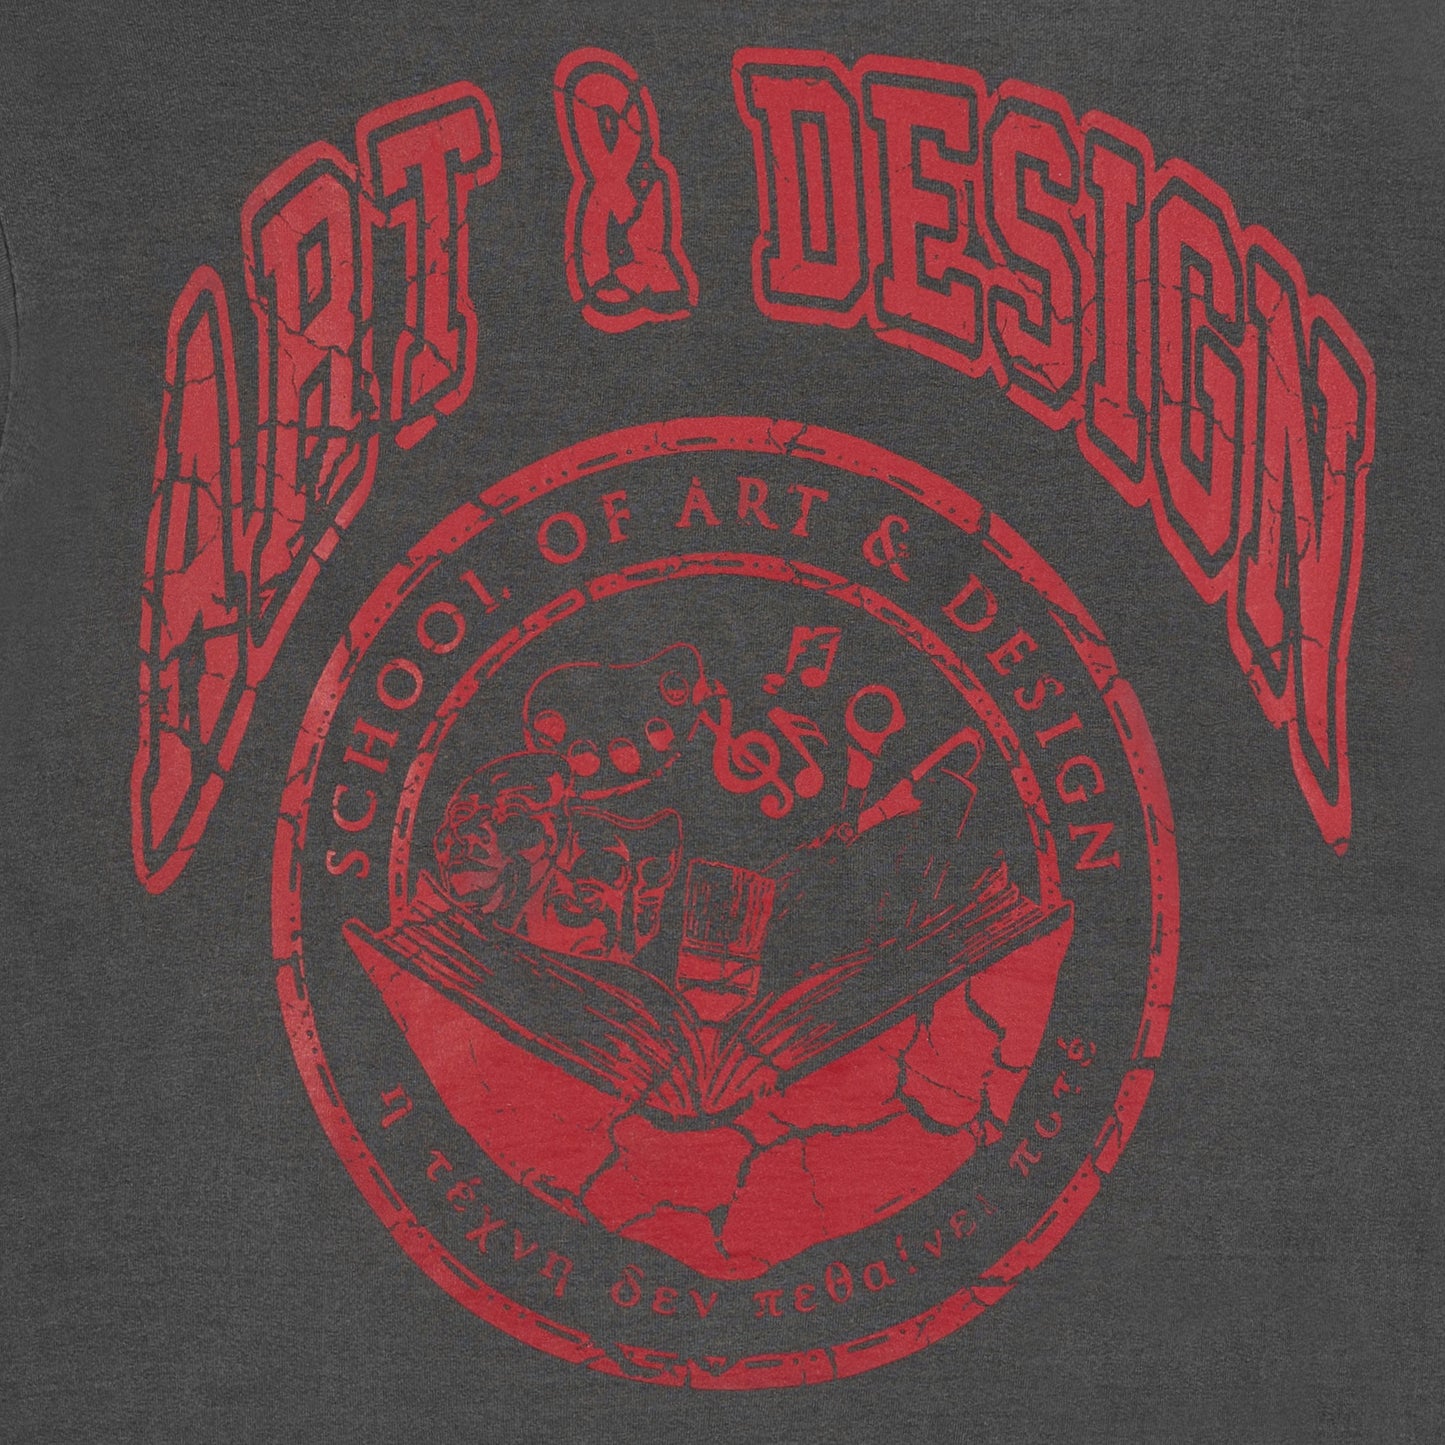 School of Art & Design Seal Tee